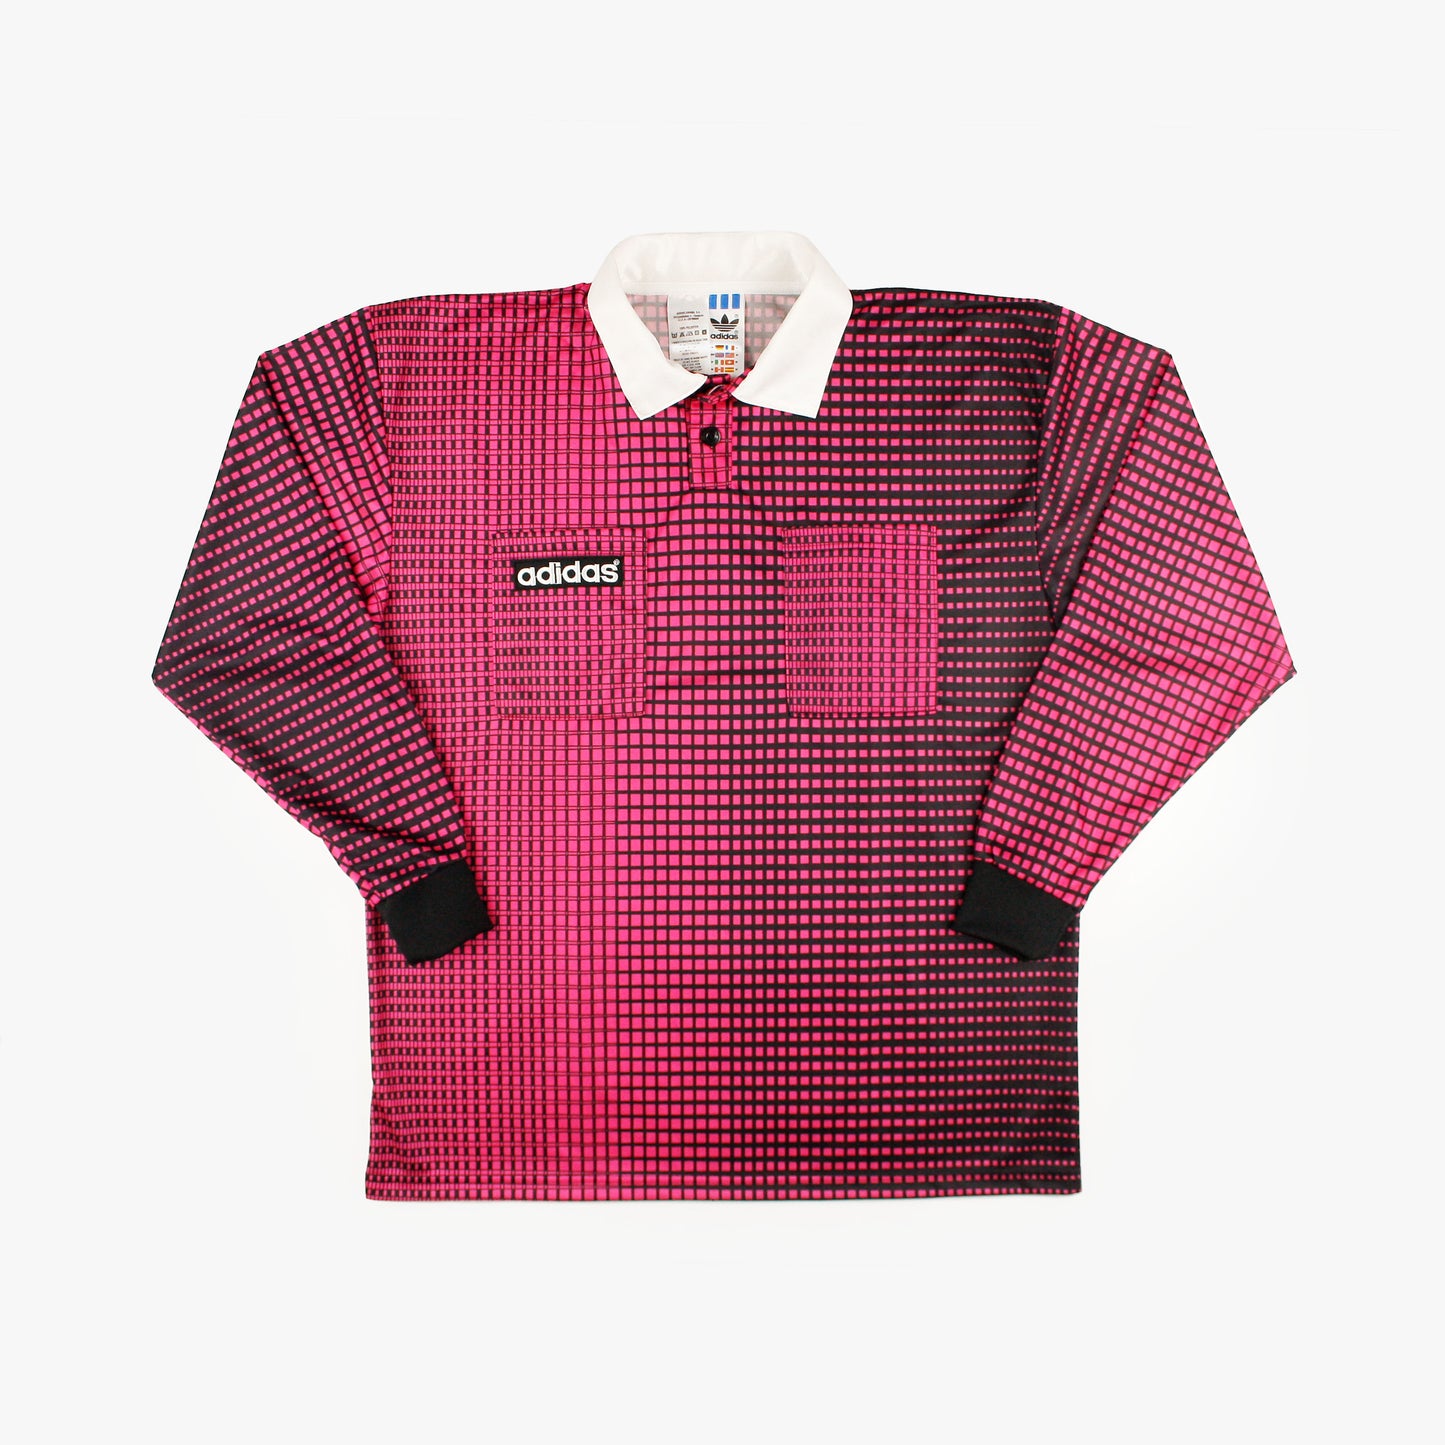 USA 94 • Referee Shirt • M